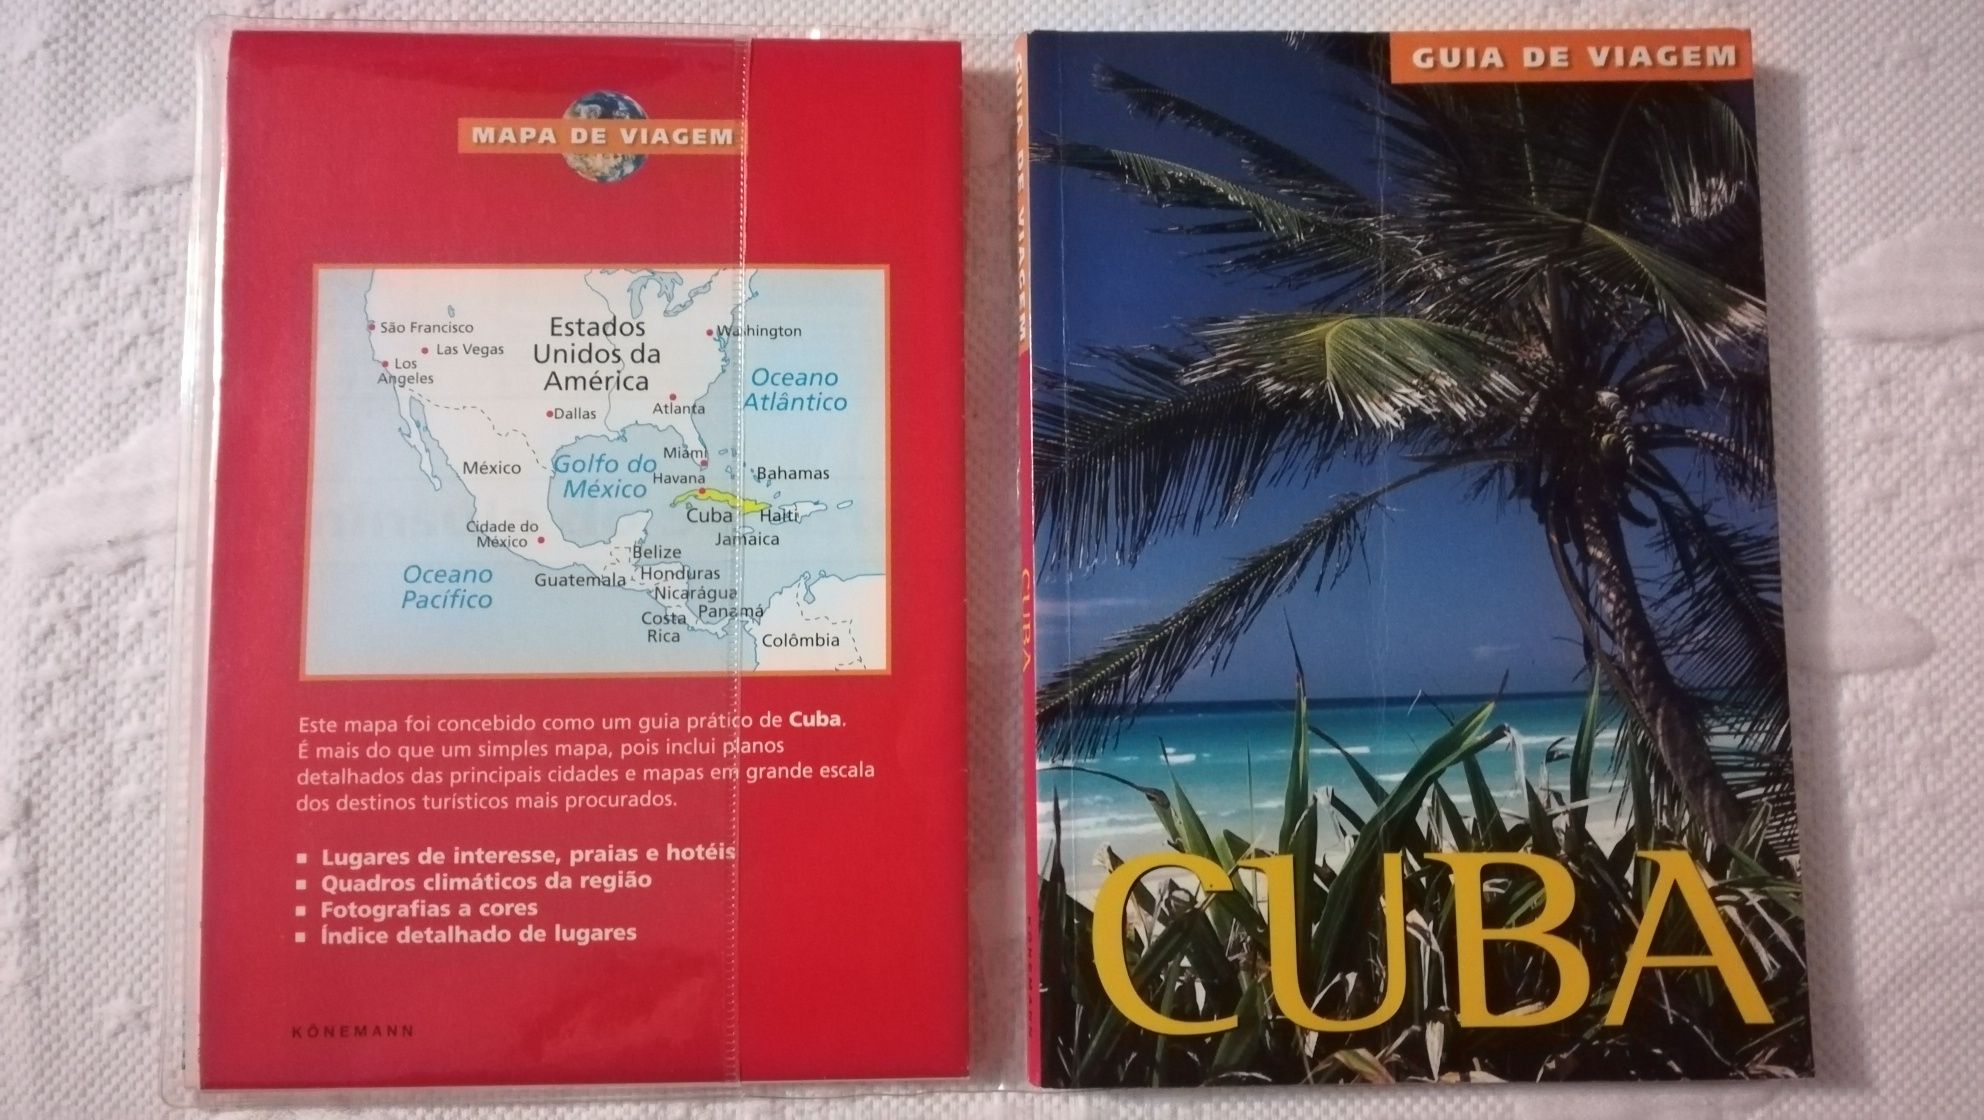 Guias de viagem: Praga, Londres e Cuba